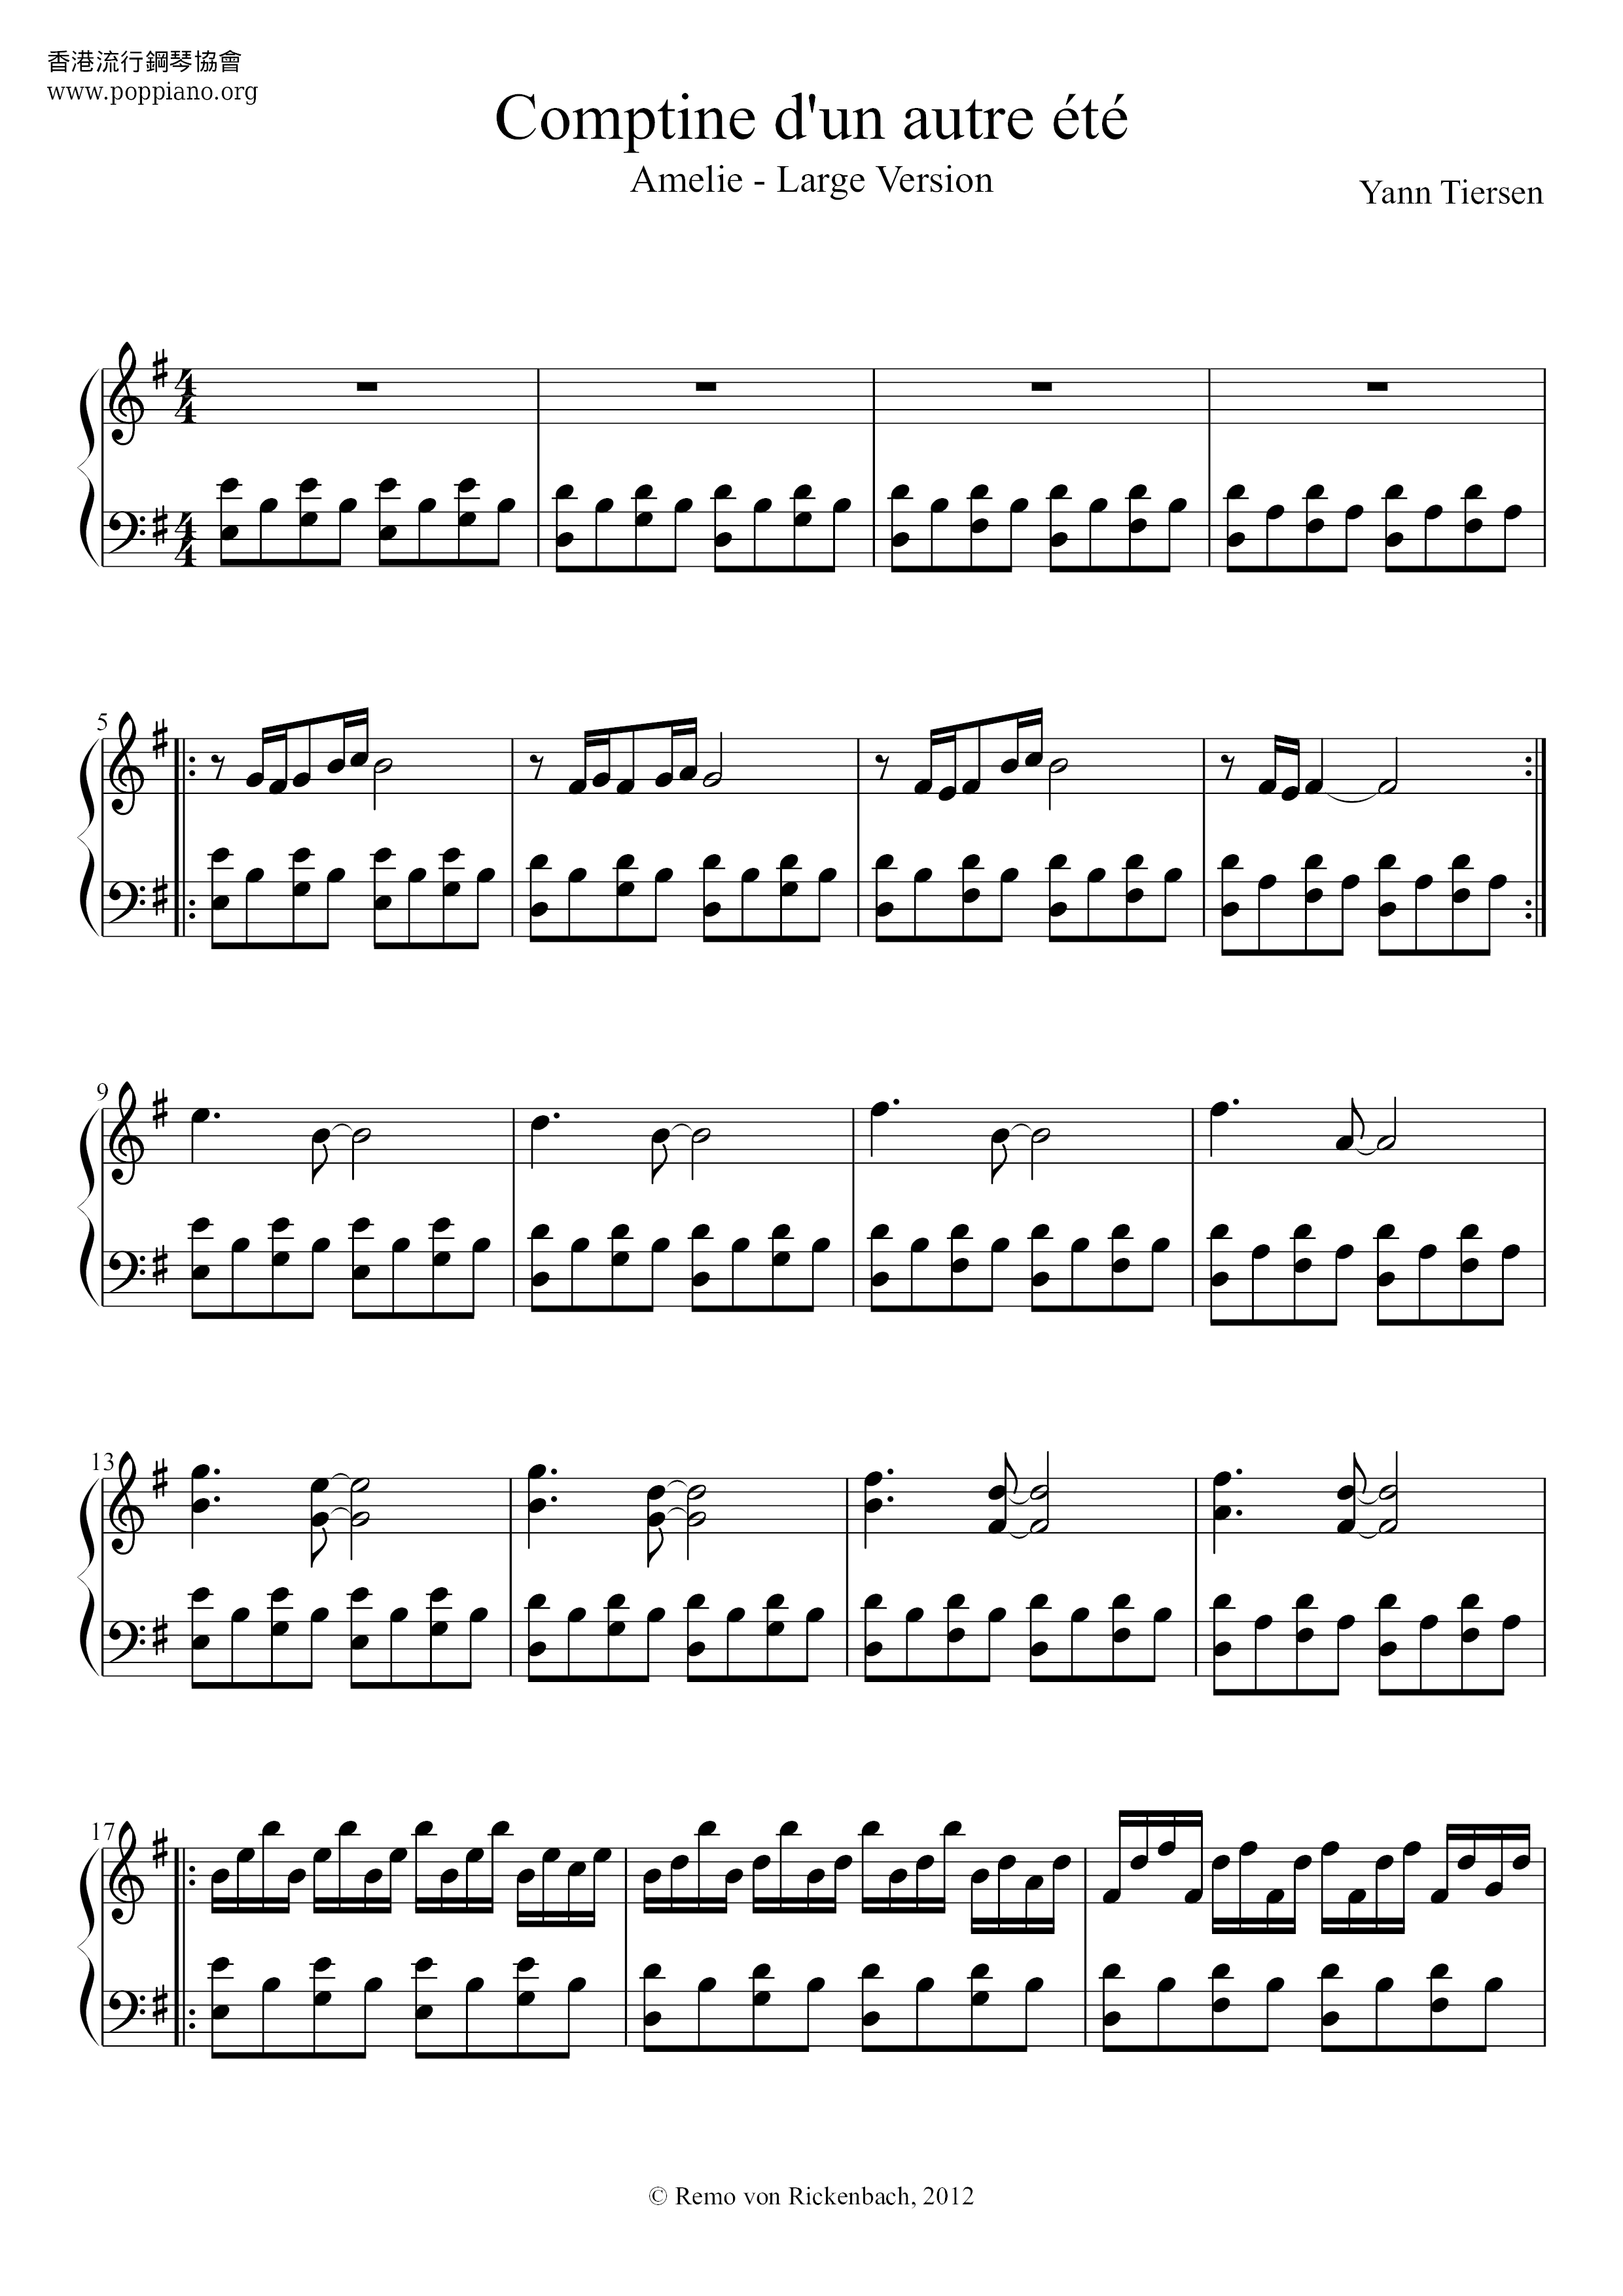 Yann Tiersen Comptine D Un Autre Ete L Apres Midi Sheet Music Pdf Å¤©ä½¿æç¾éº Æ¥½è­ Free Score Download Yann tiersen comptine d'un autre ete (from amelie) sheet music notes and chords arranged for piano solo. yann tiersen comptine d un autre ete